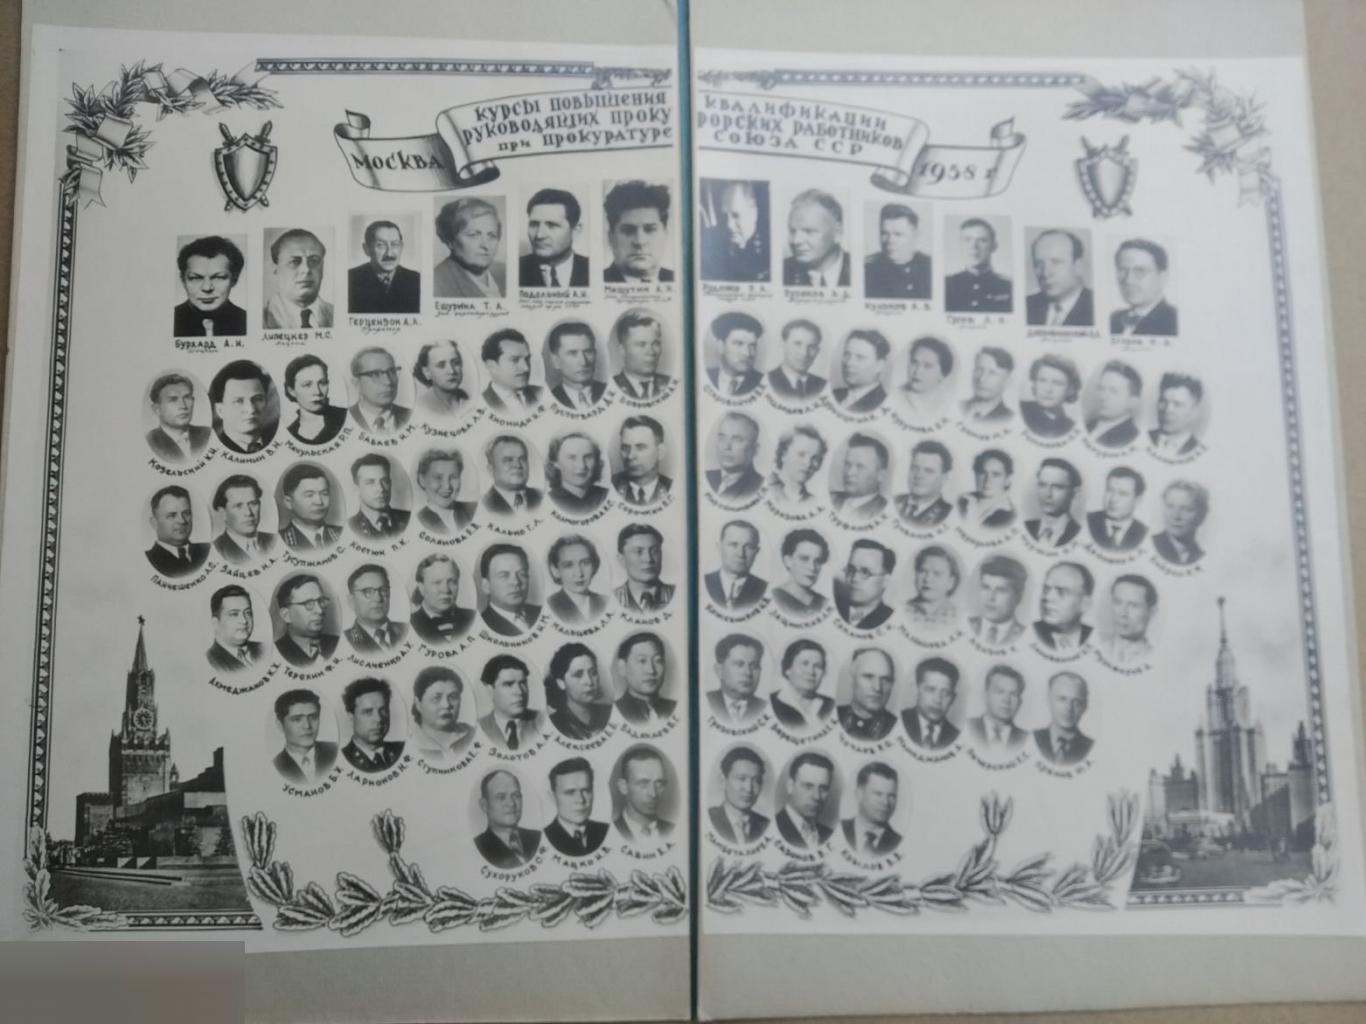 Курсы Повышения Квалификации, Руководящих Прокурорских Работников, Прокуратура, МВД, 1958 год